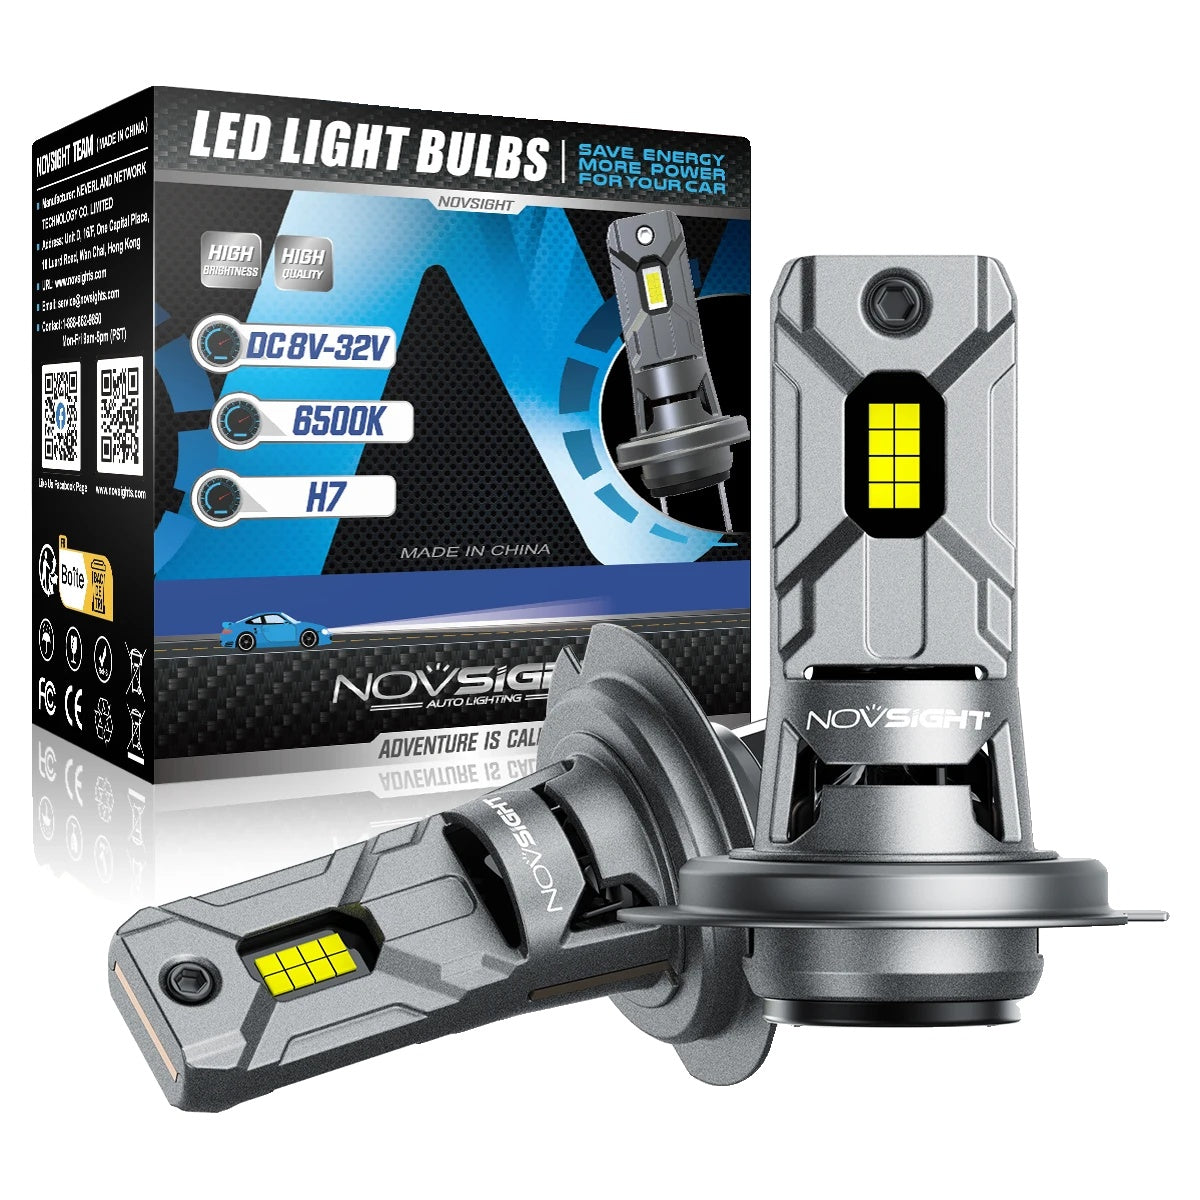 LED Headlight Bulbs, 60W, 12000LM